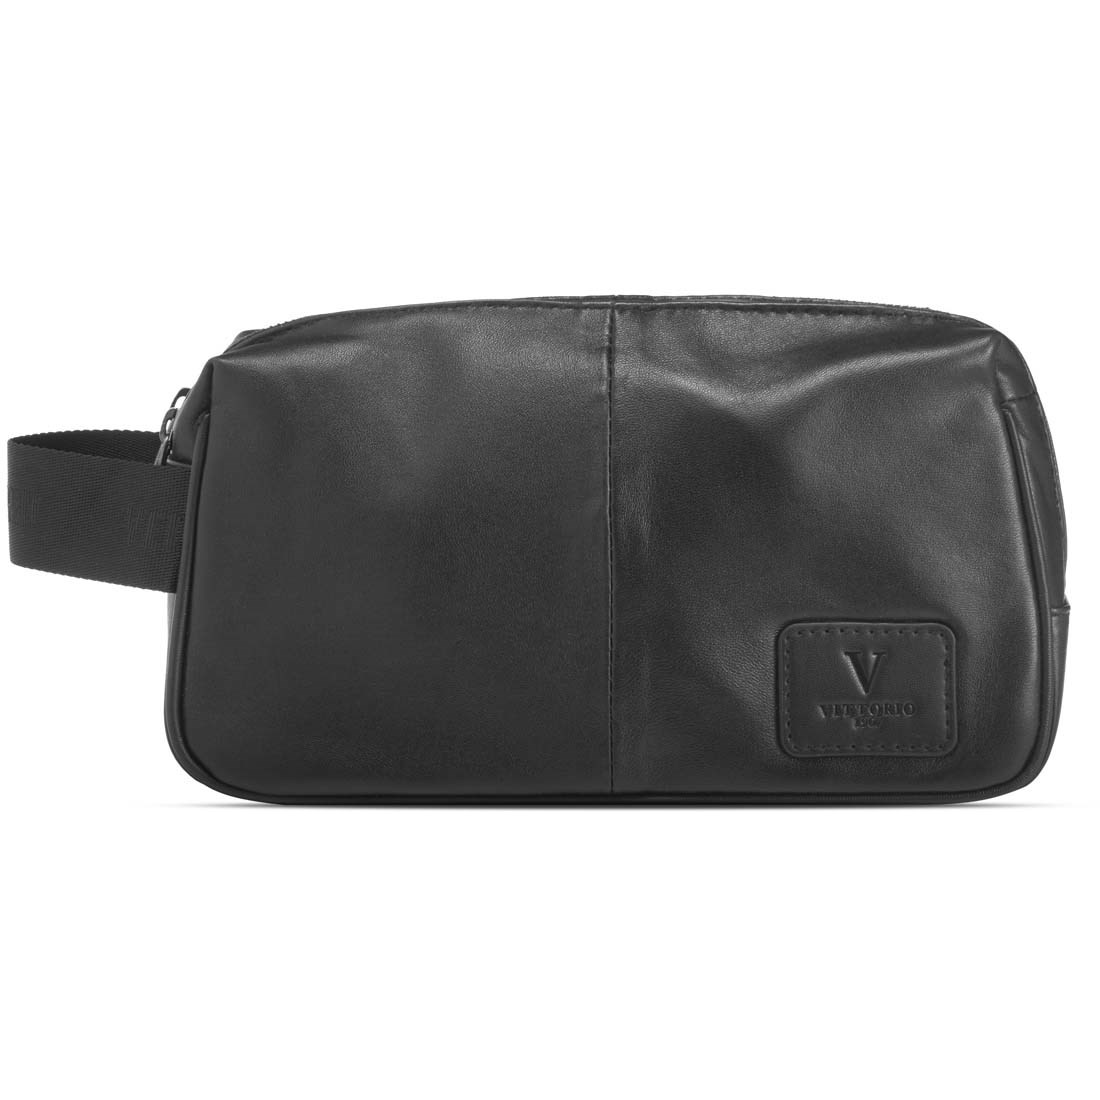 Läs mer om Vittorio Vit Leather Wash Bag 2 Room